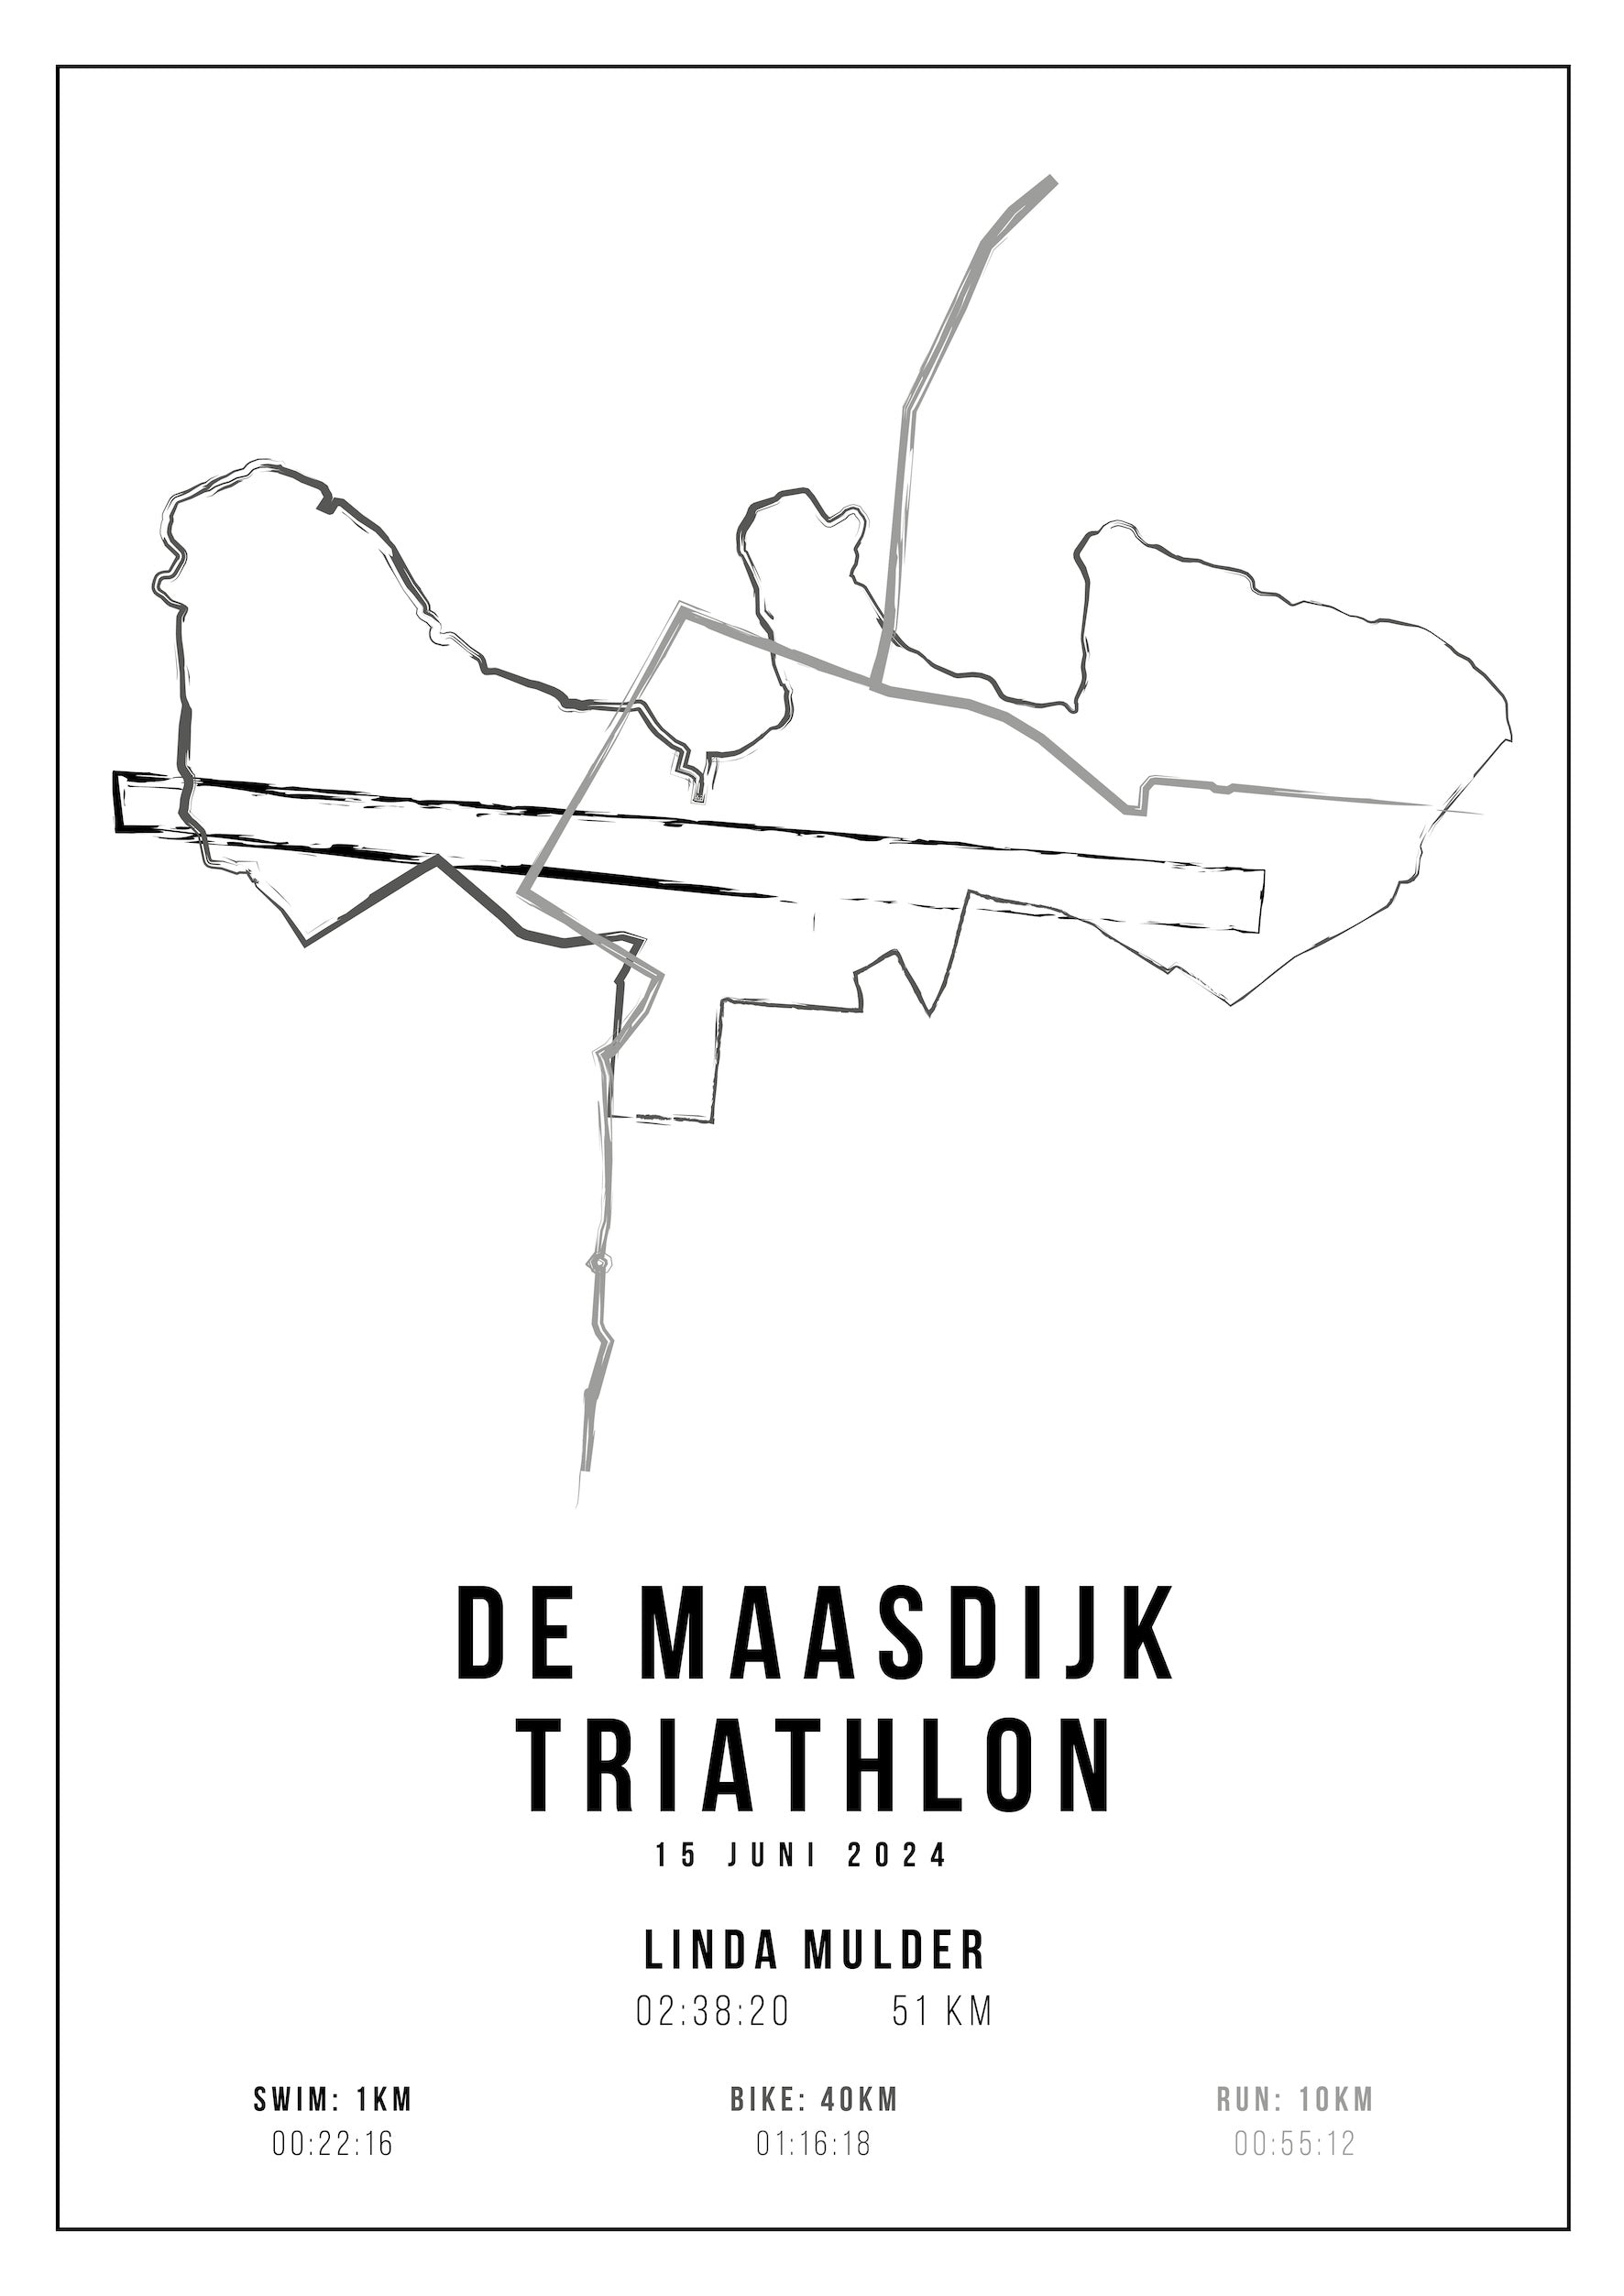 Maasdijk Triathlon - Handmade Drawing - Poster